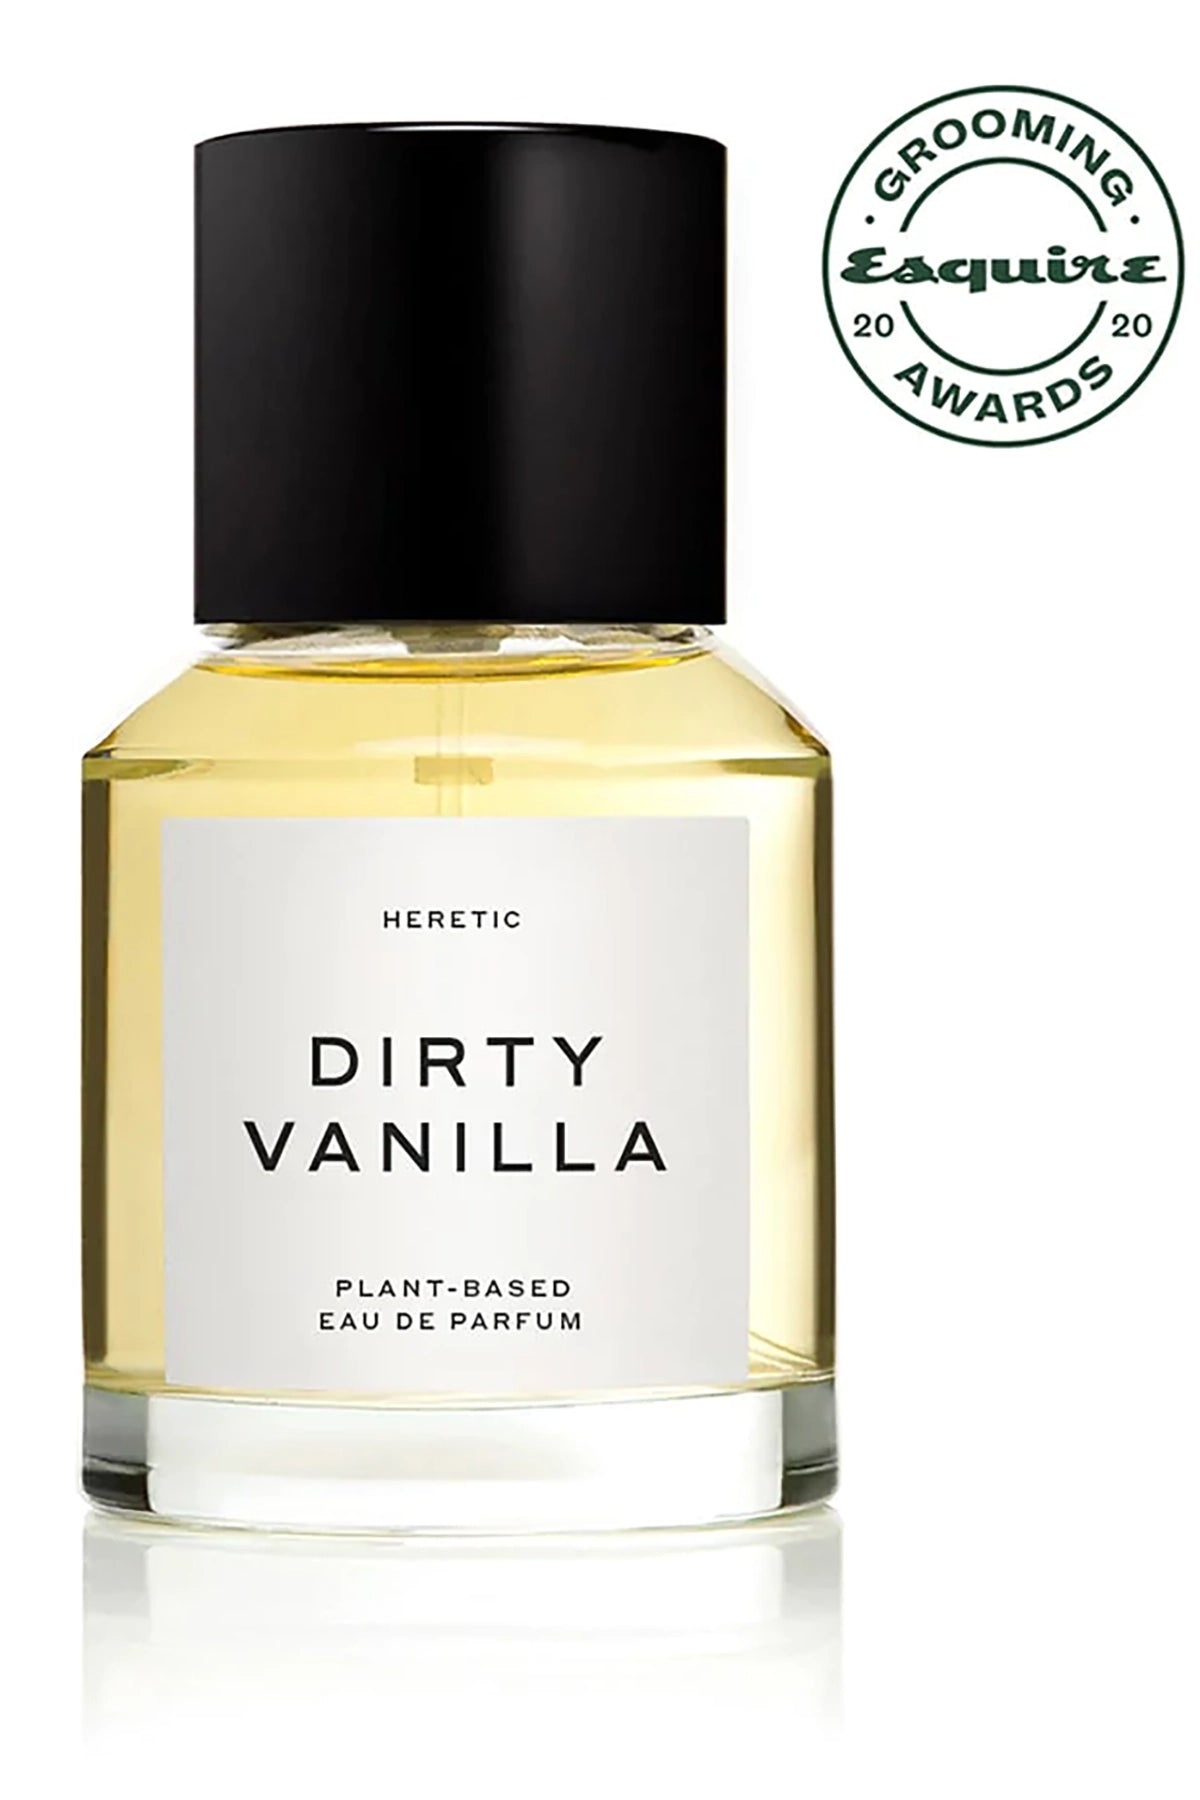 Heretic Parfum Dirty Vanilla